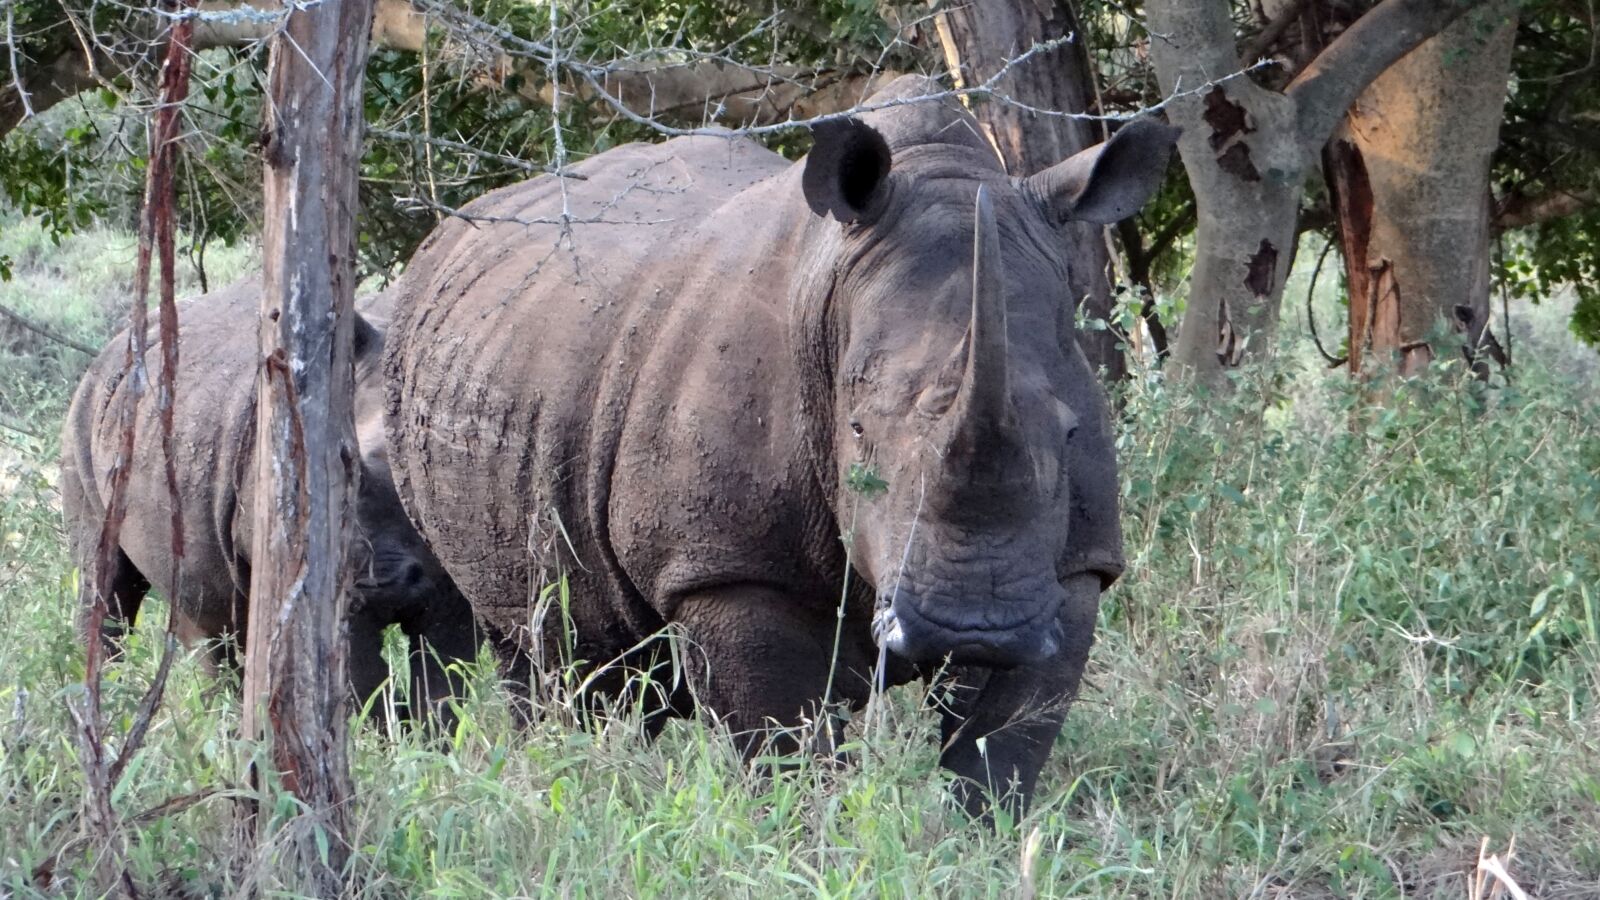 Sony Cyber-shot DSC-HX100V sample photo. Wildlife, africa, rhino photography